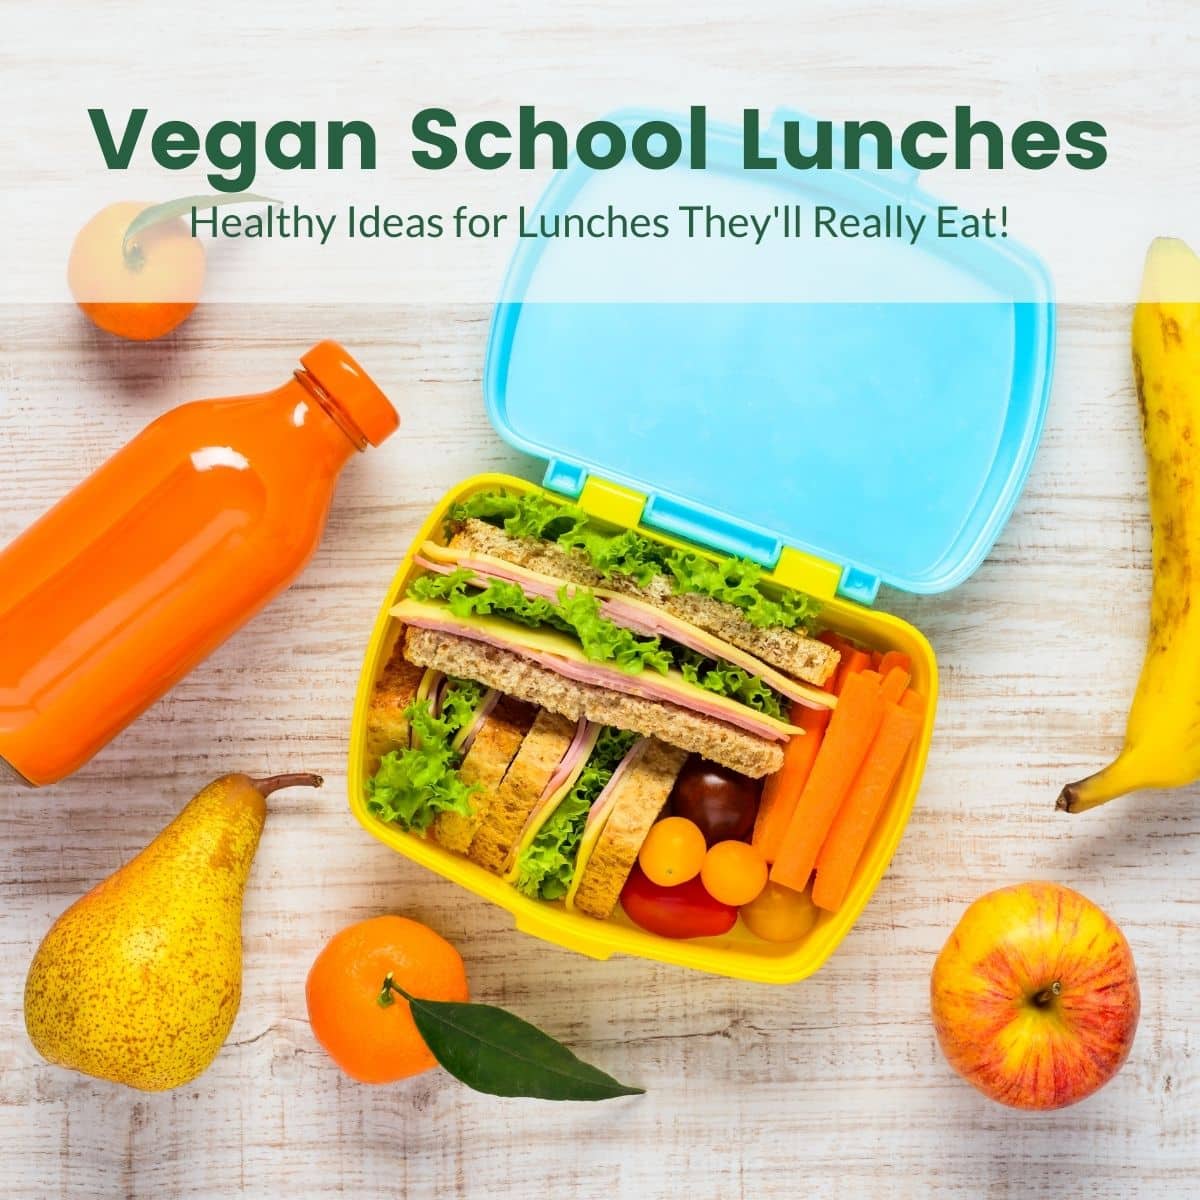 https://www.vegkitchen.com/wp-content/uploads/2018/07/vegan-school-lunches-2.jpg